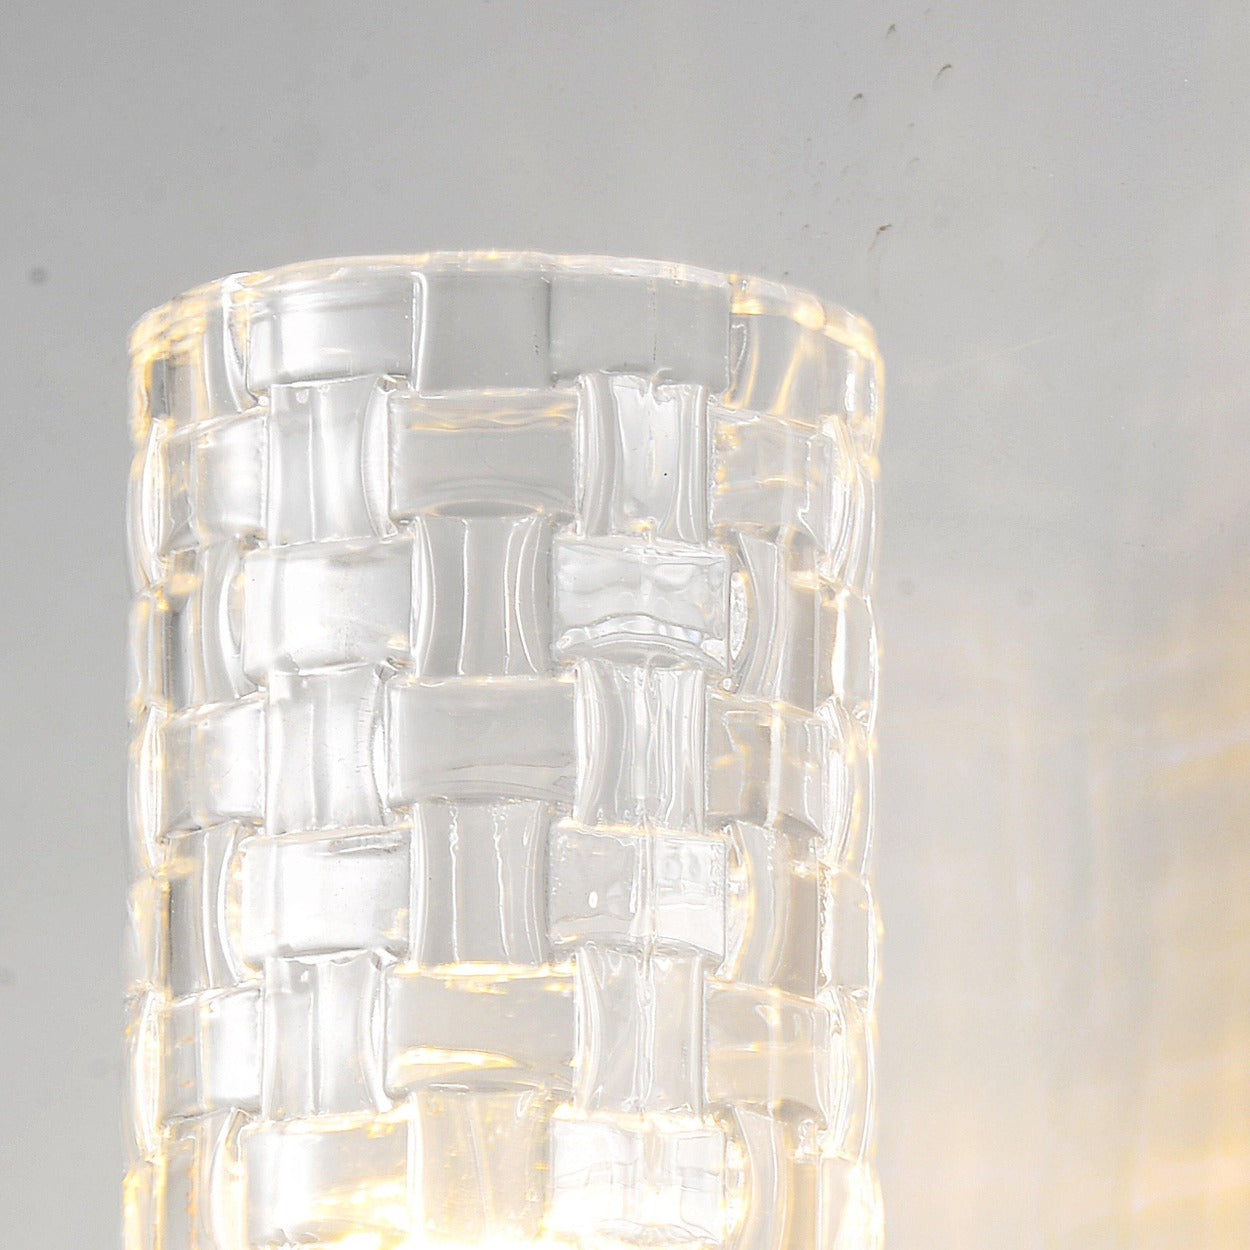 ANKUR CUT GLASS CYLINDER WALL LIGHT - Ankur Lighting